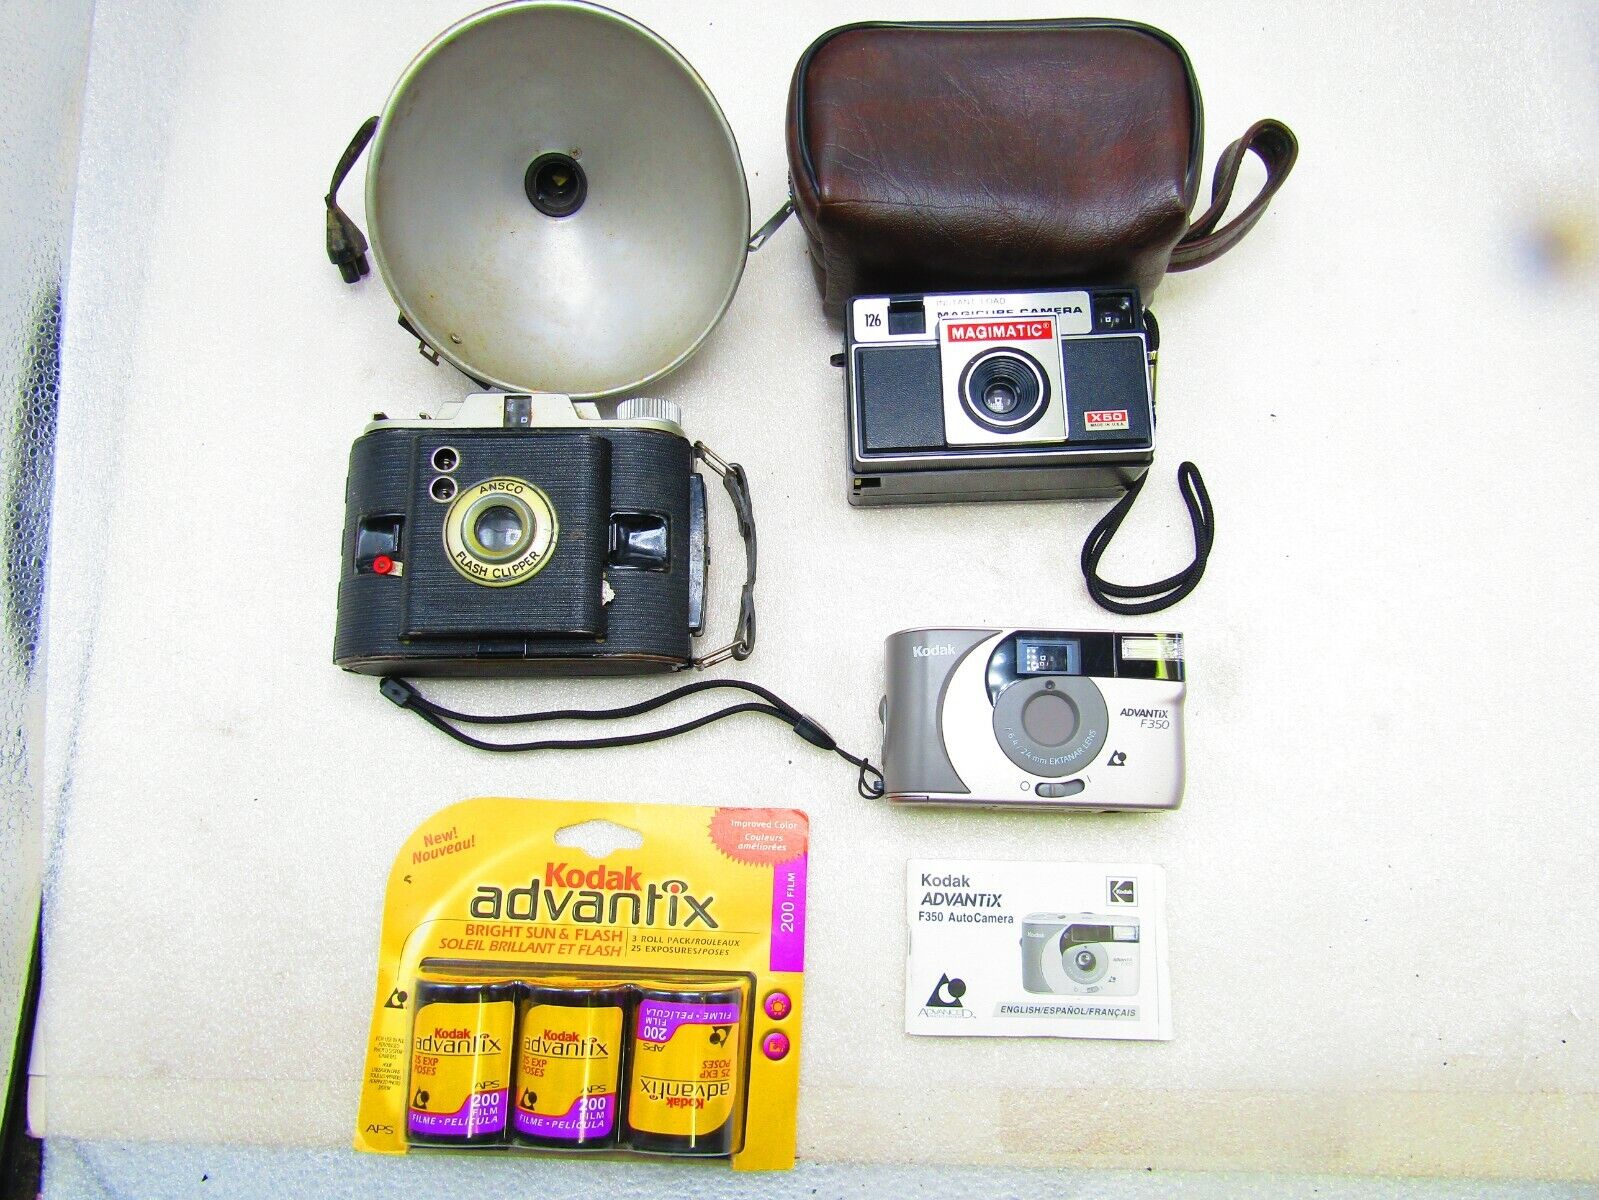 Camera assortment, three units Kodak Advantage F 350